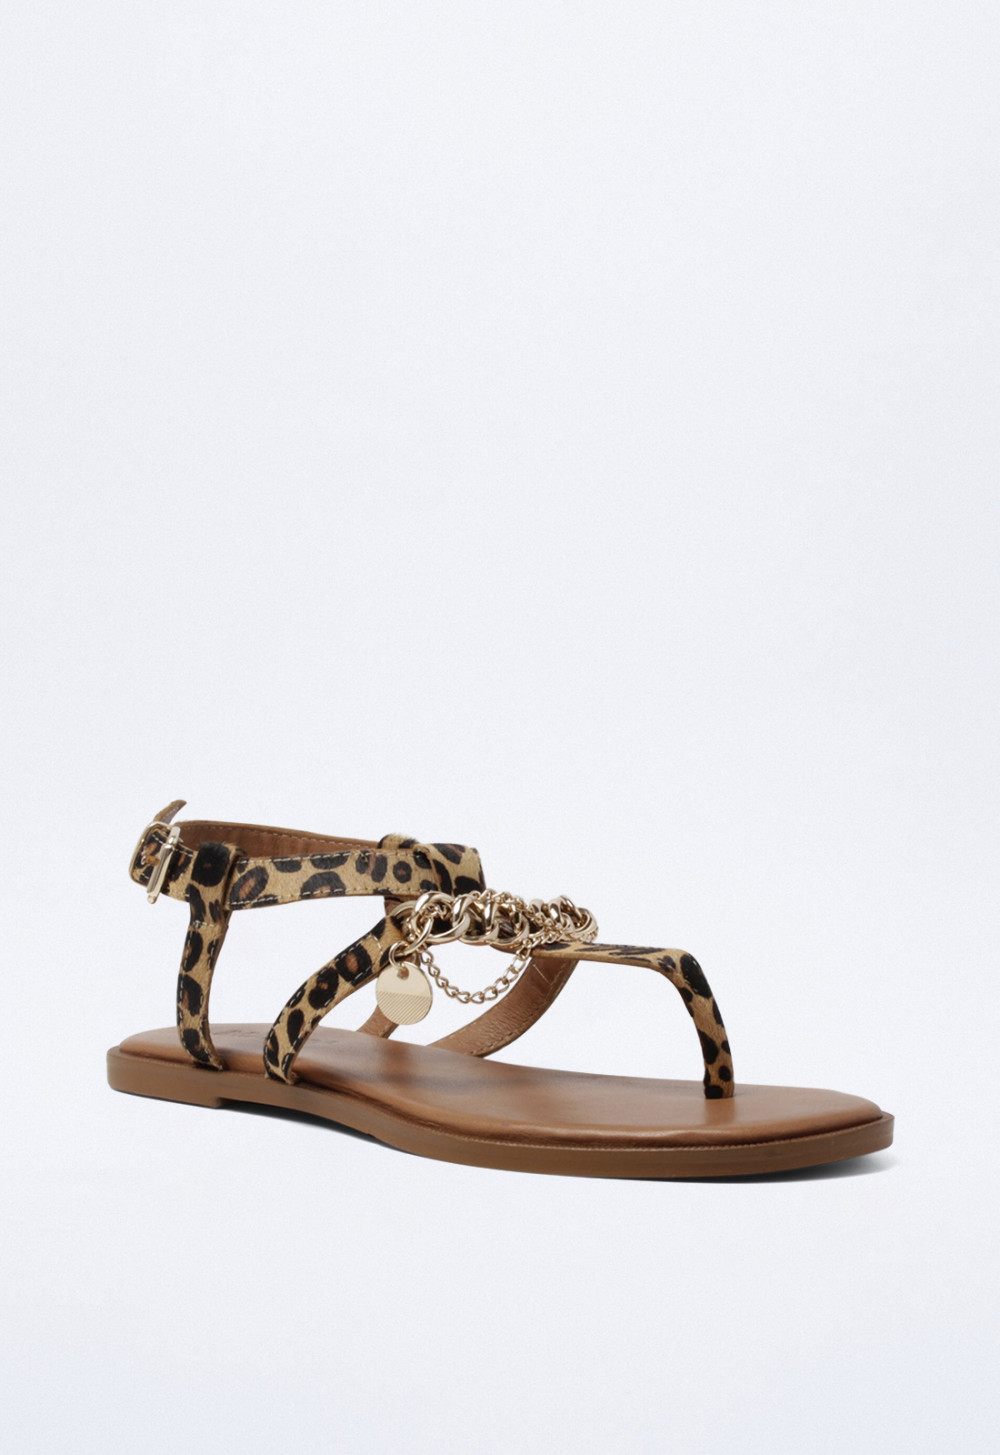 Sandalia de mujer leopardo VAS 981007